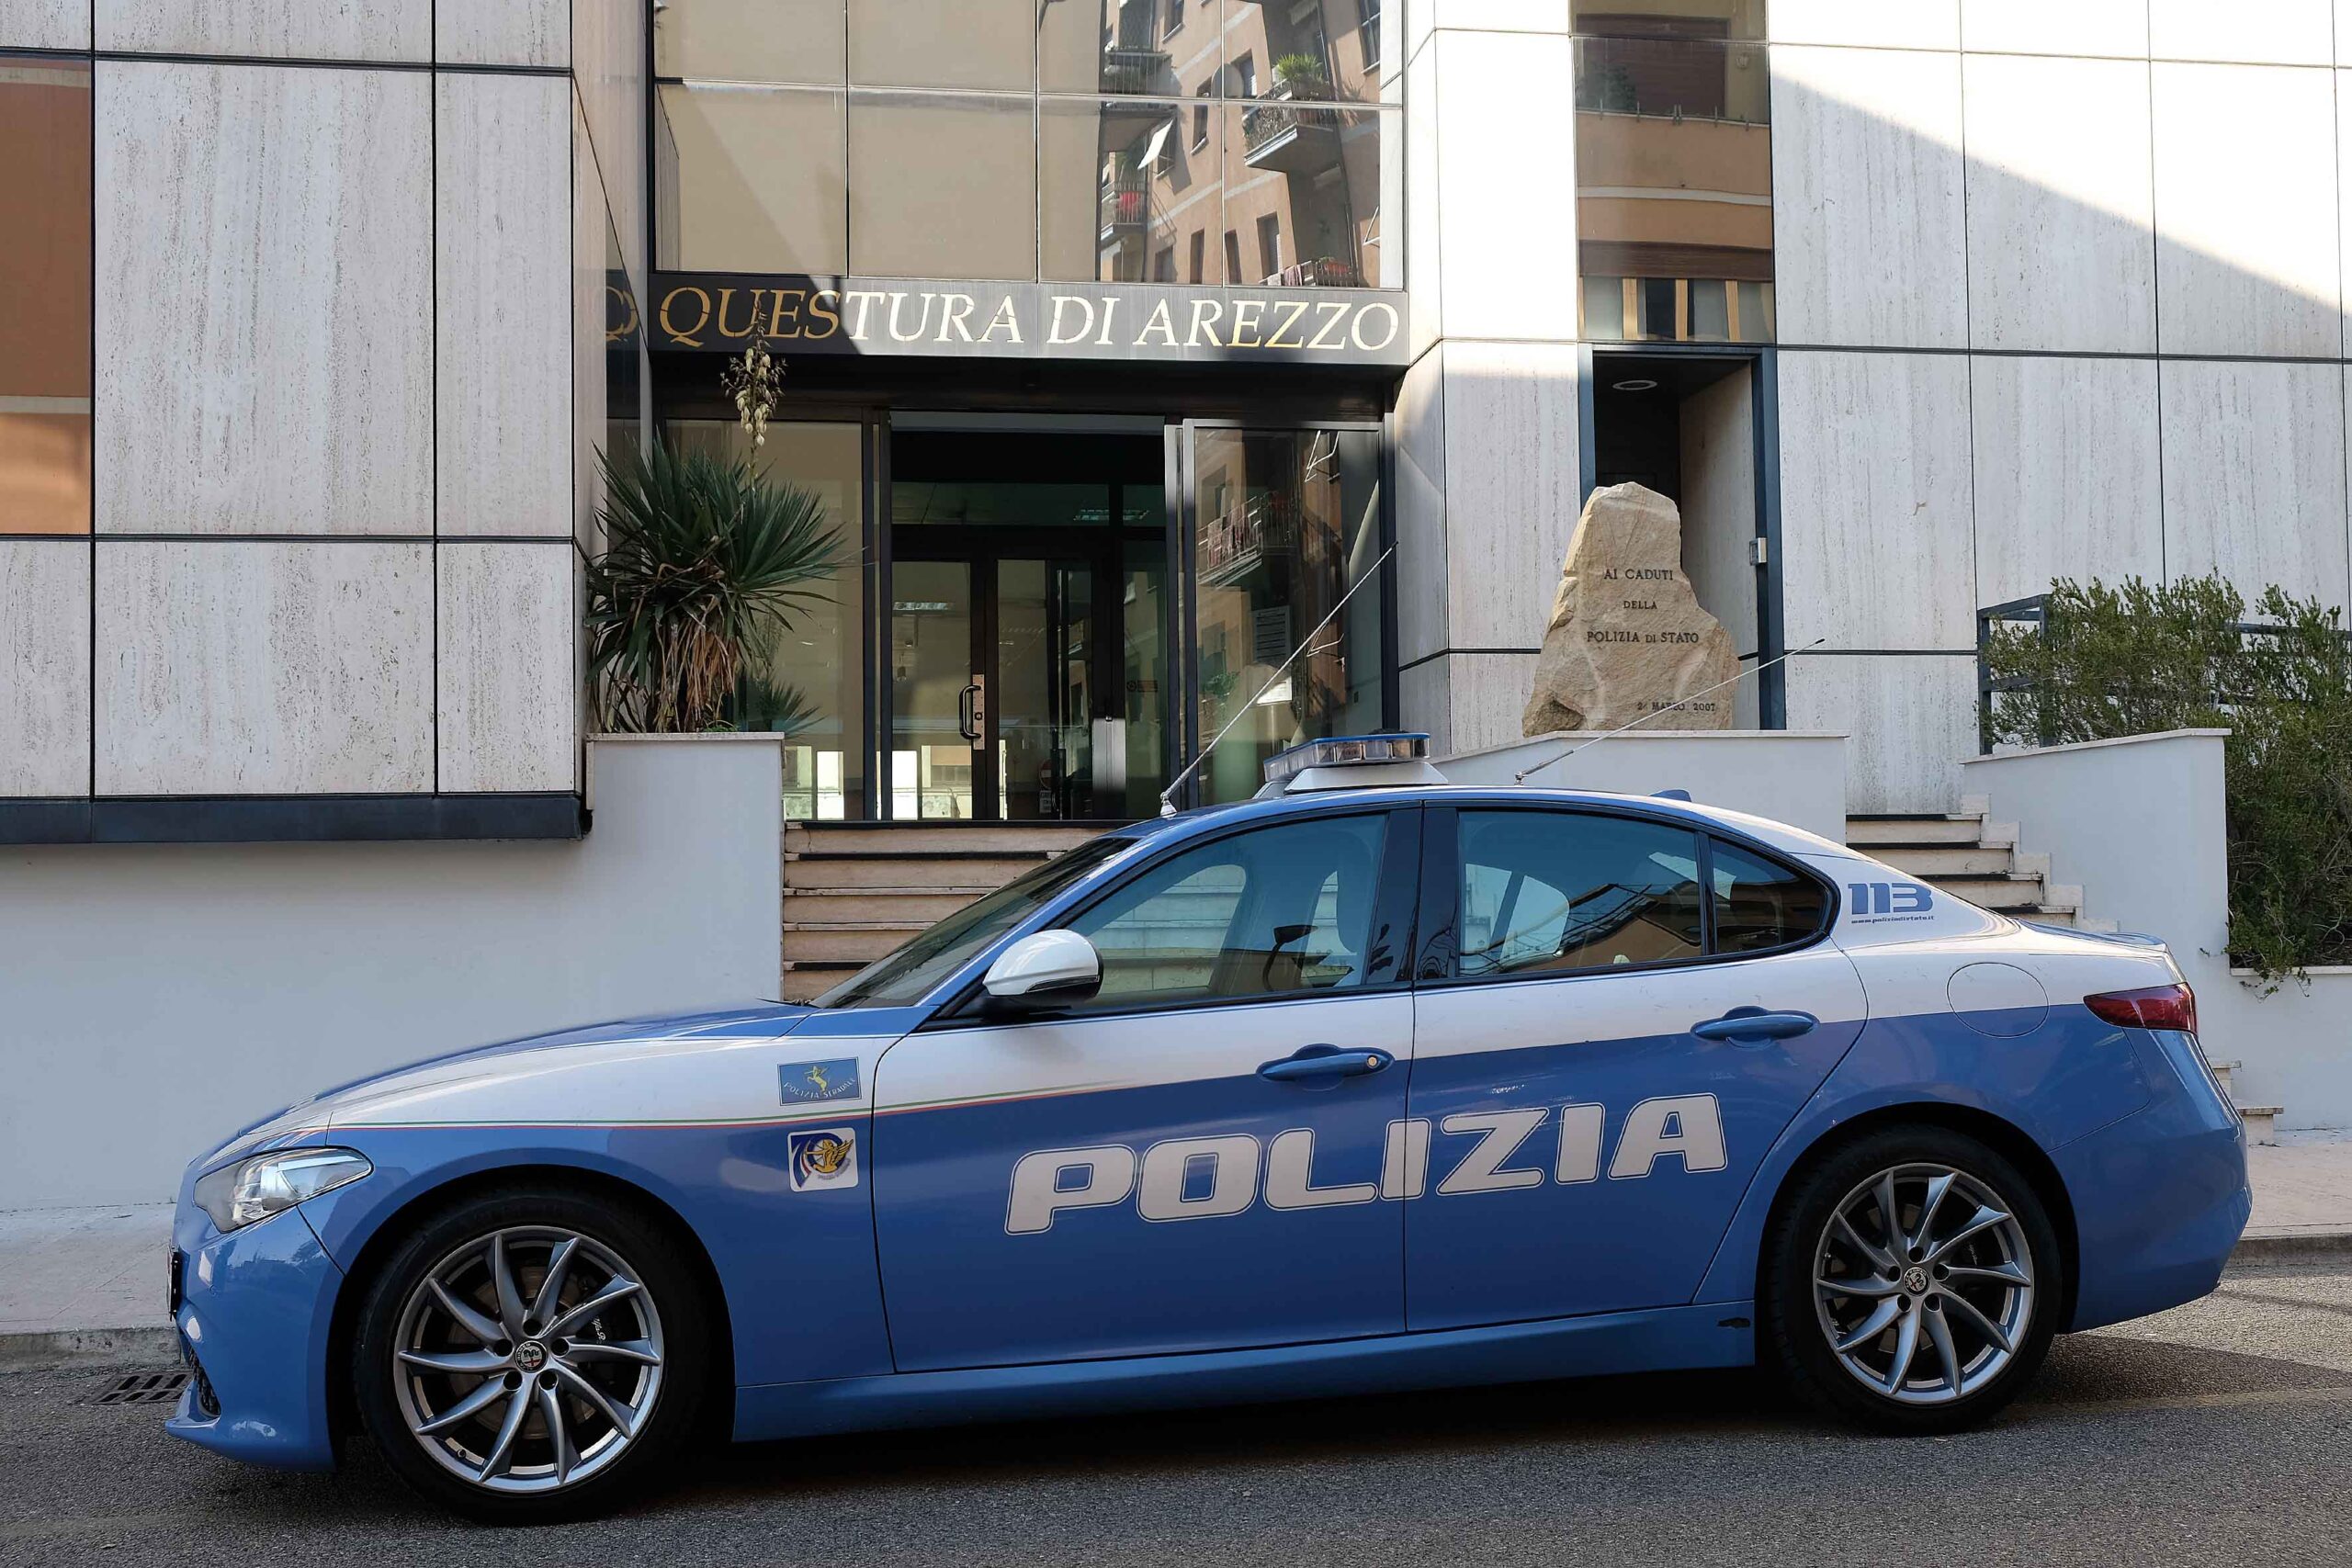 La Polizia di Stato di Arezzo procede all’arresto e notifica provvedimento di espulsione nei confronti di un cittadino ucraino con documenti falsi